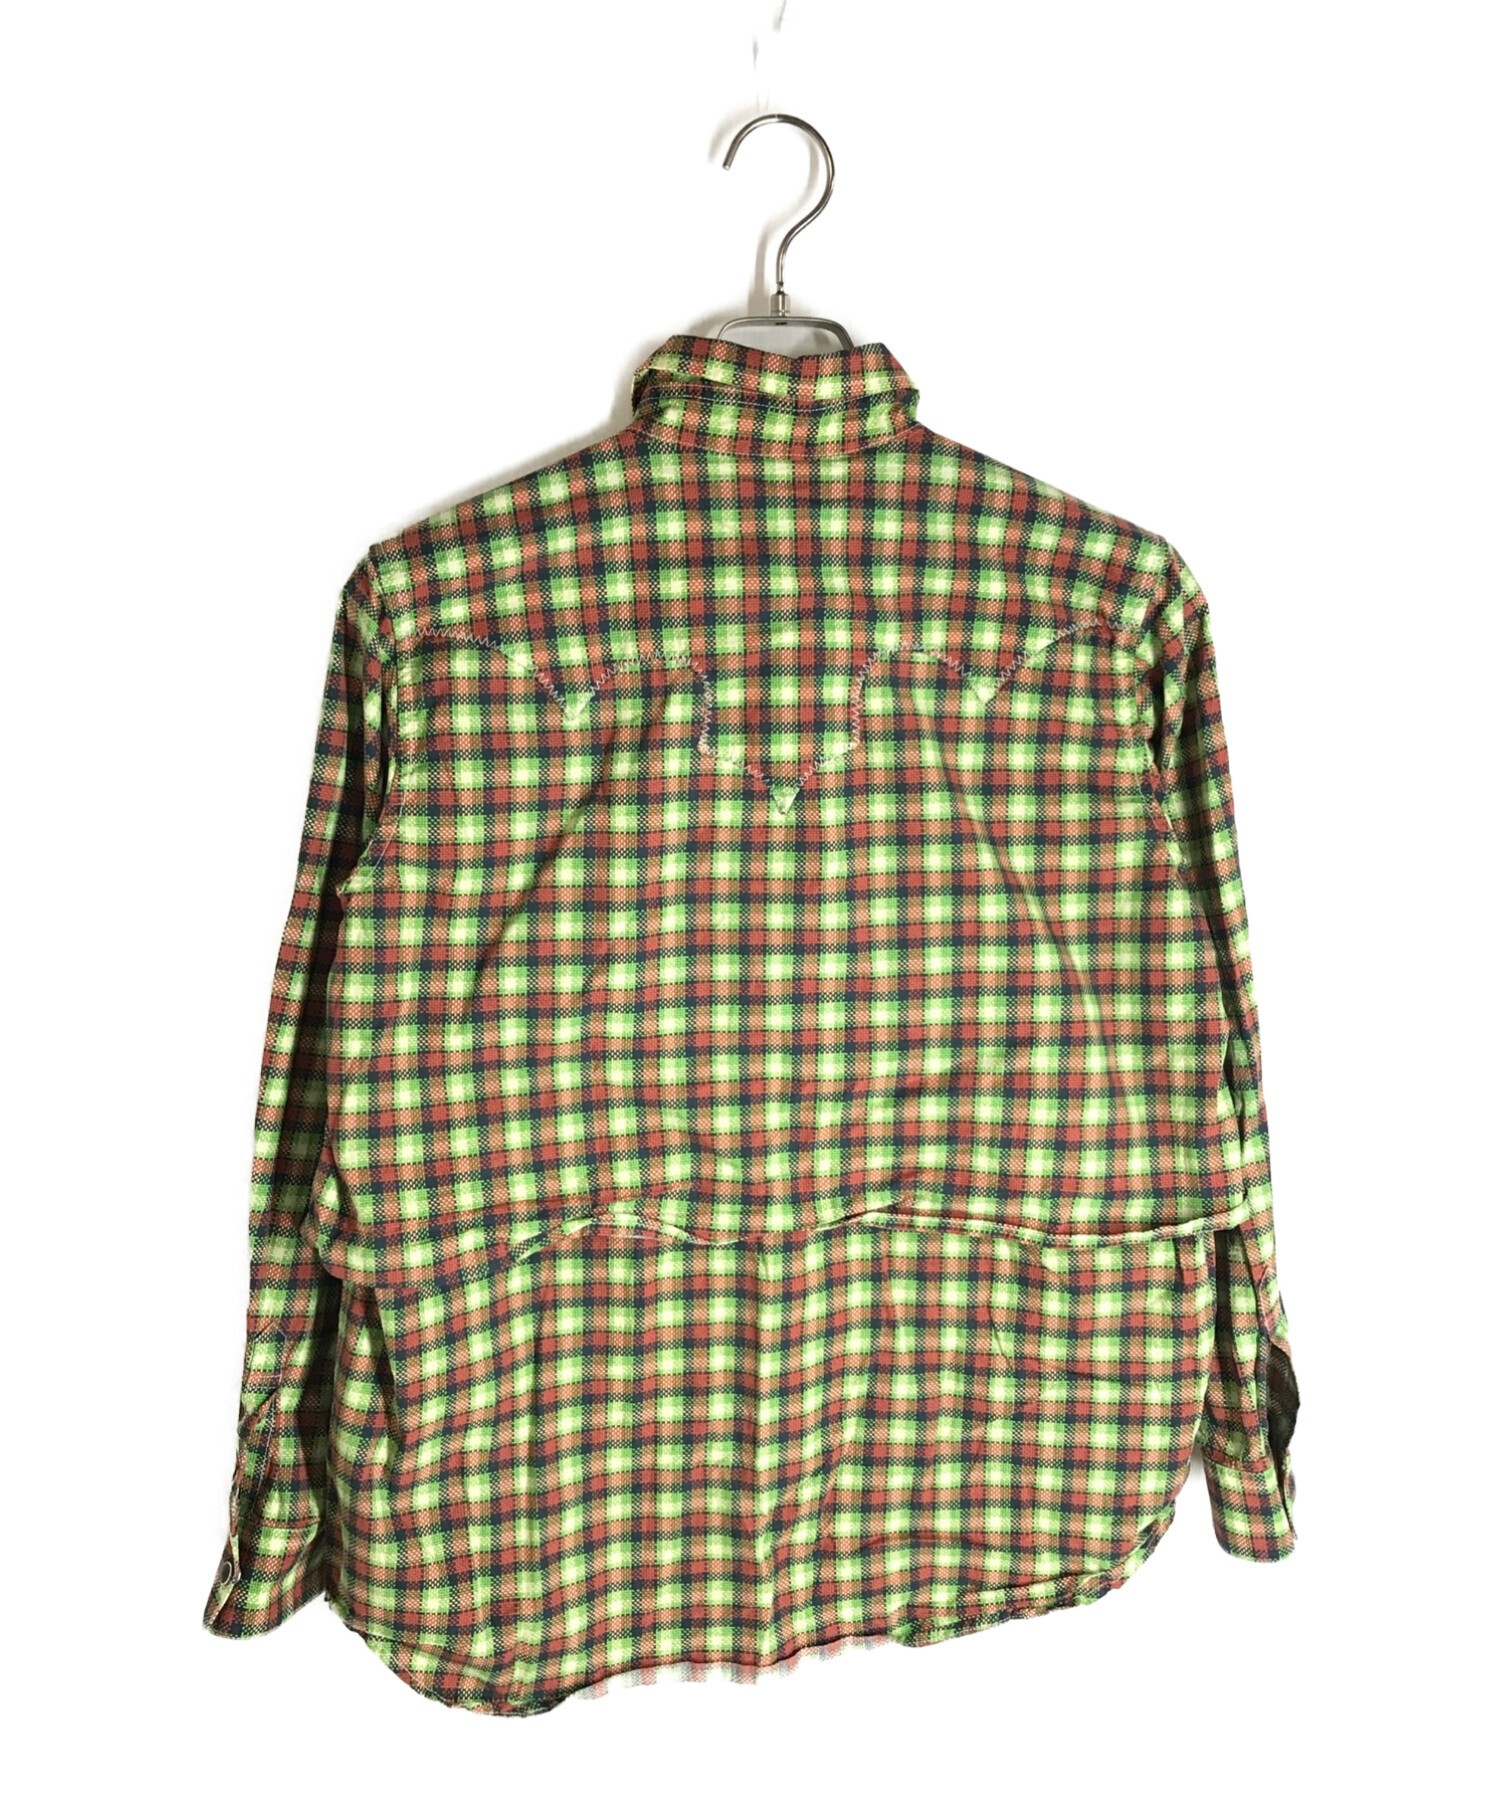 TOGA PULLA (トーガ プルラ) ブロードウエスタンチェックシャツ グリーン×オレンジ サイズ:38